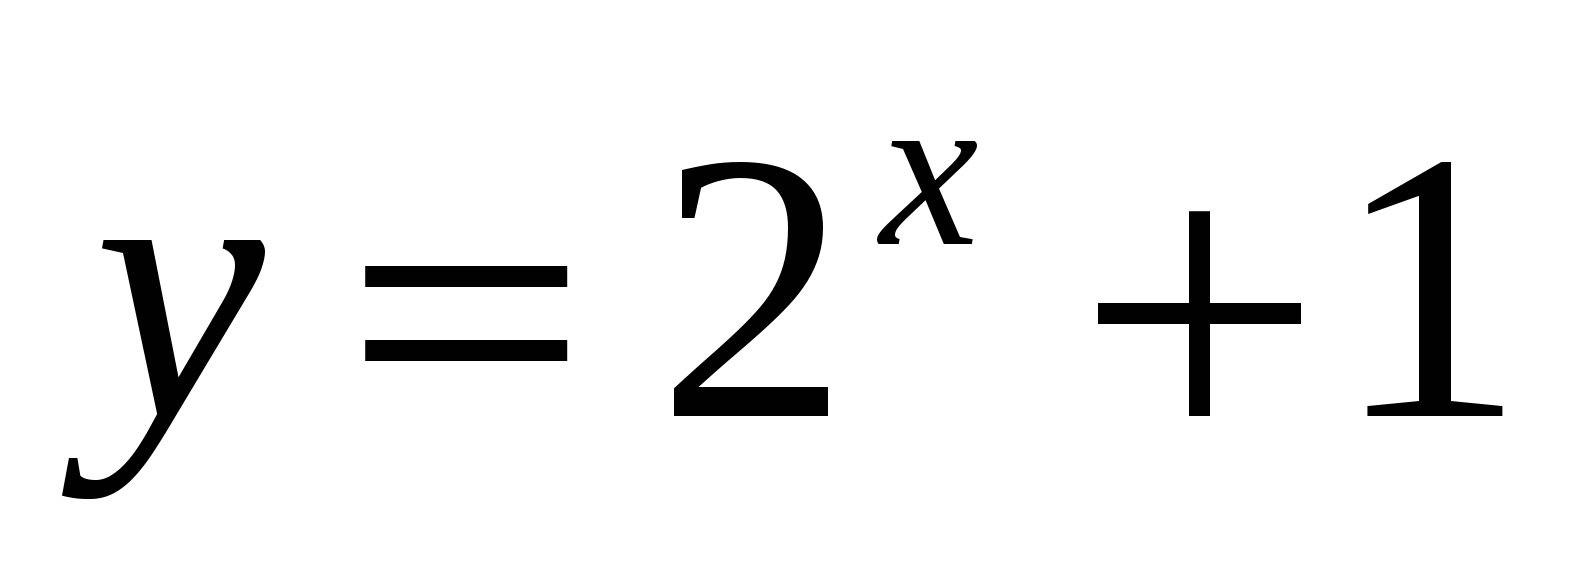 Показательная функция, Решение показательных уравнений